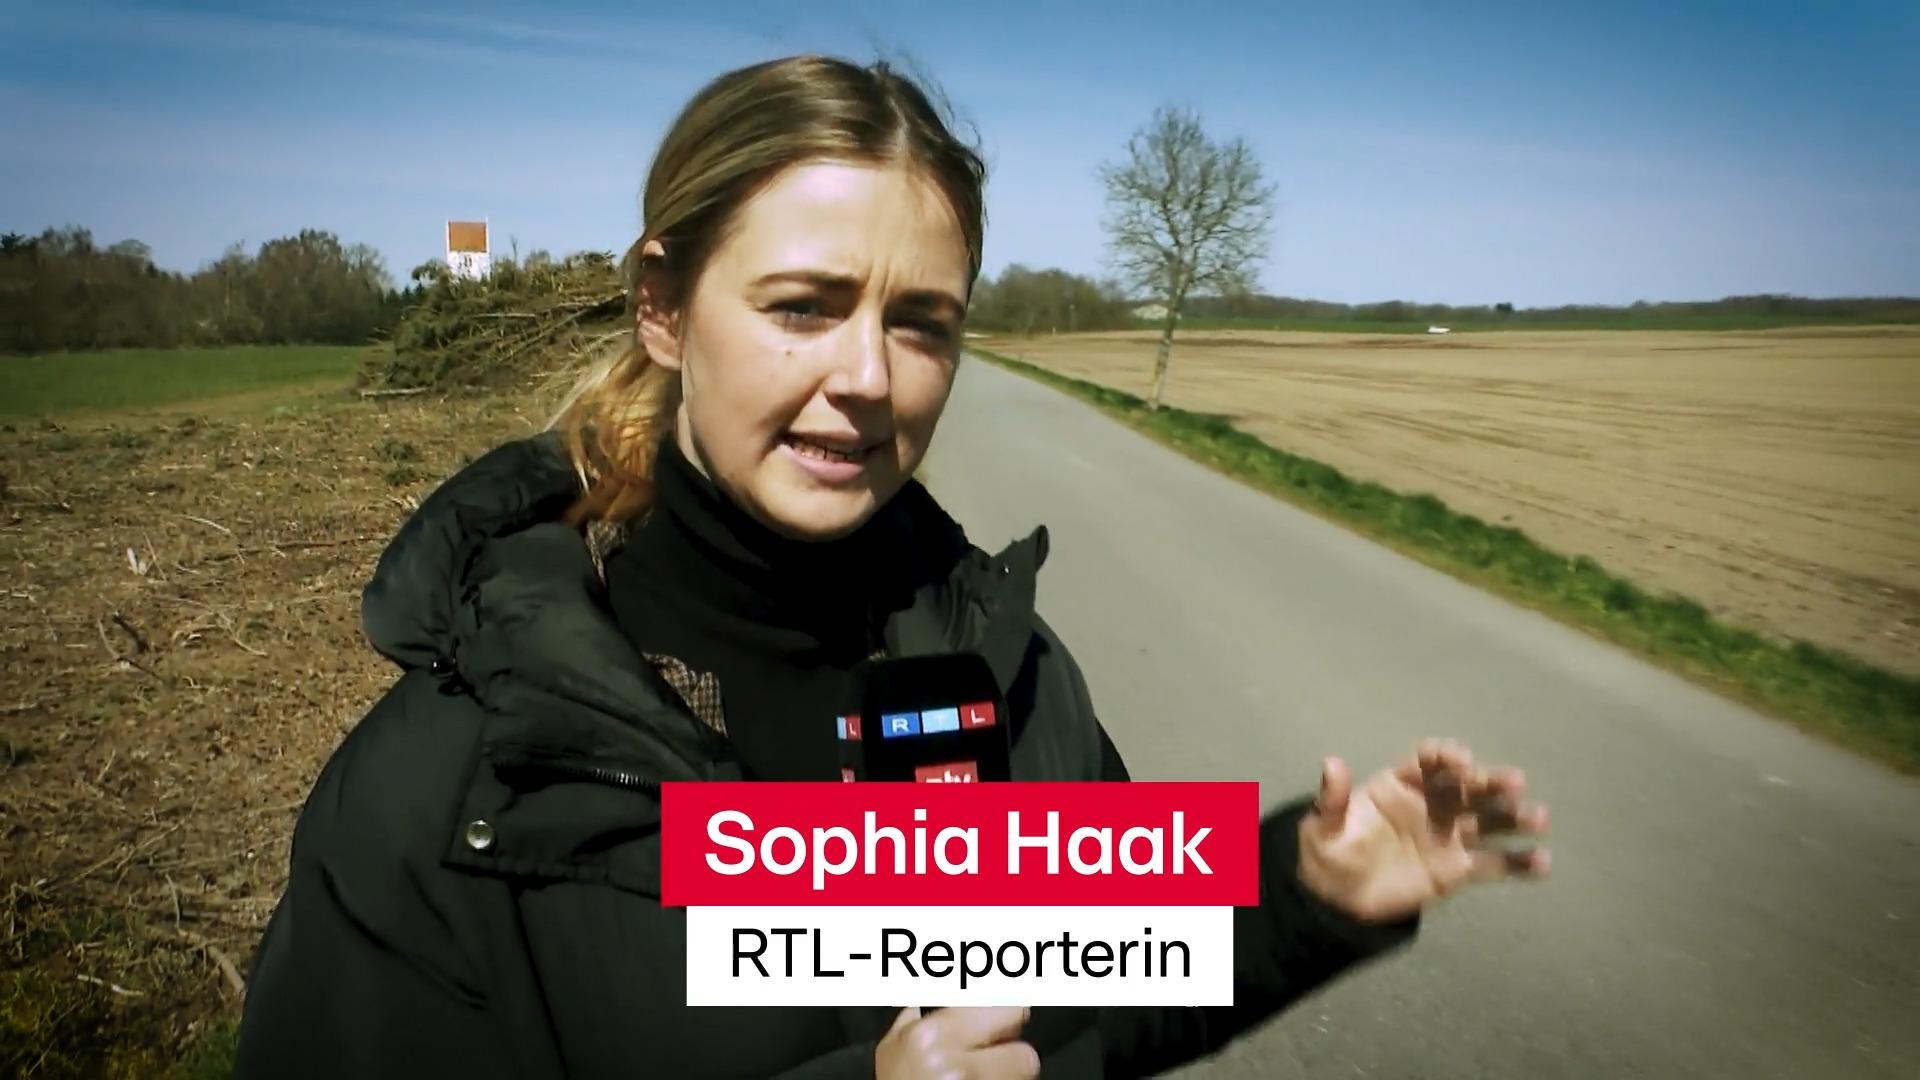 È così che è stata rilasciata la tredicenne, così come il suo reporter di RTL in Danimarca